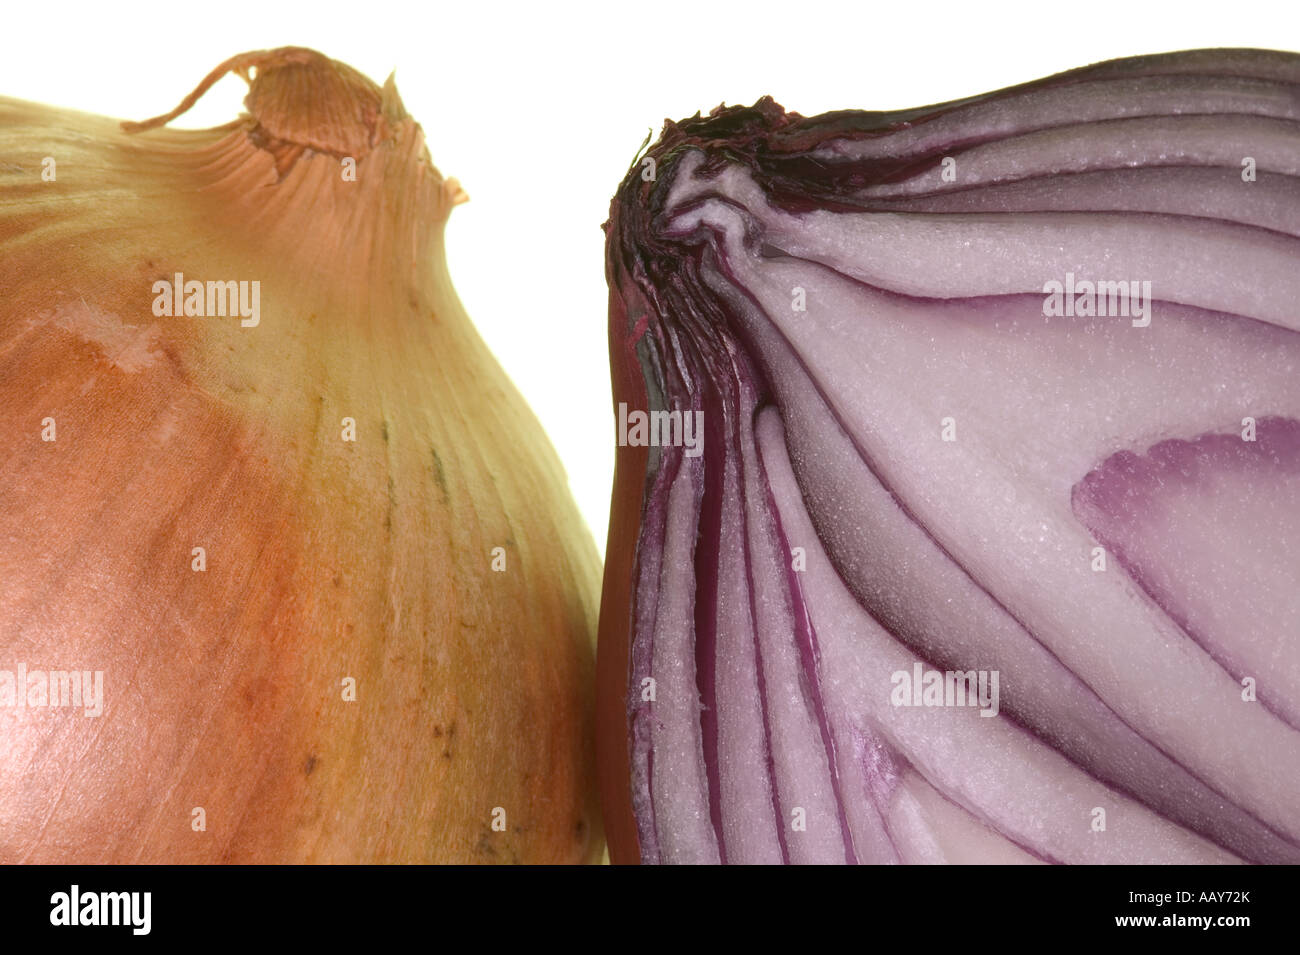 Makroaufnahme von zwei Zwiebeln vor einem weißen Hintergrund Stockfoto